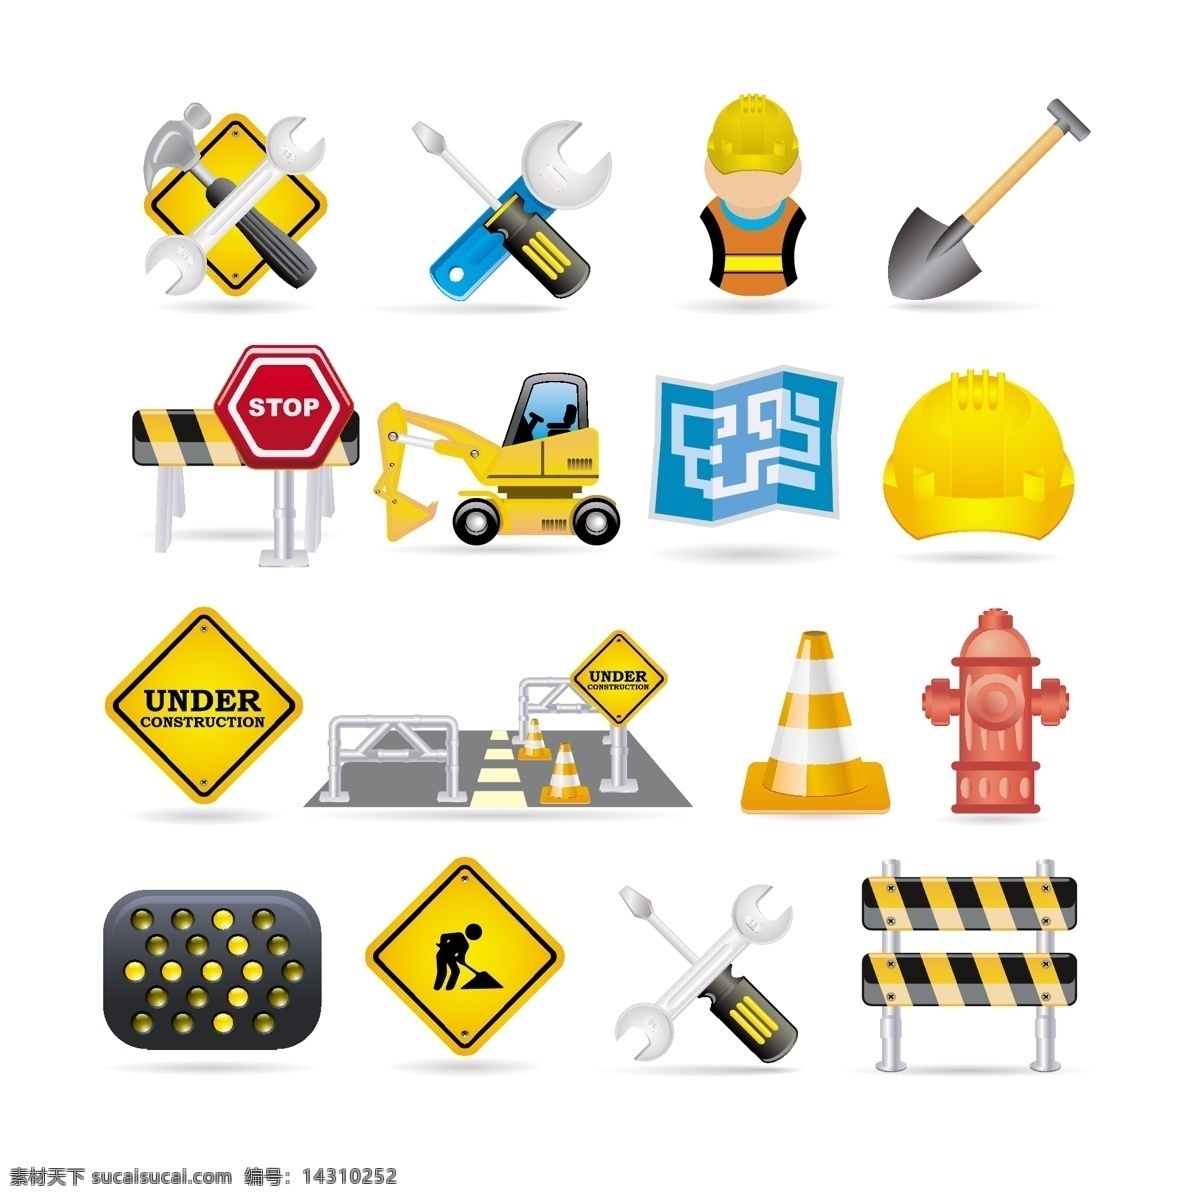 工程施工图标 工程 施工 图标 铁锹 铁锤 禁止 stop 道路 白色